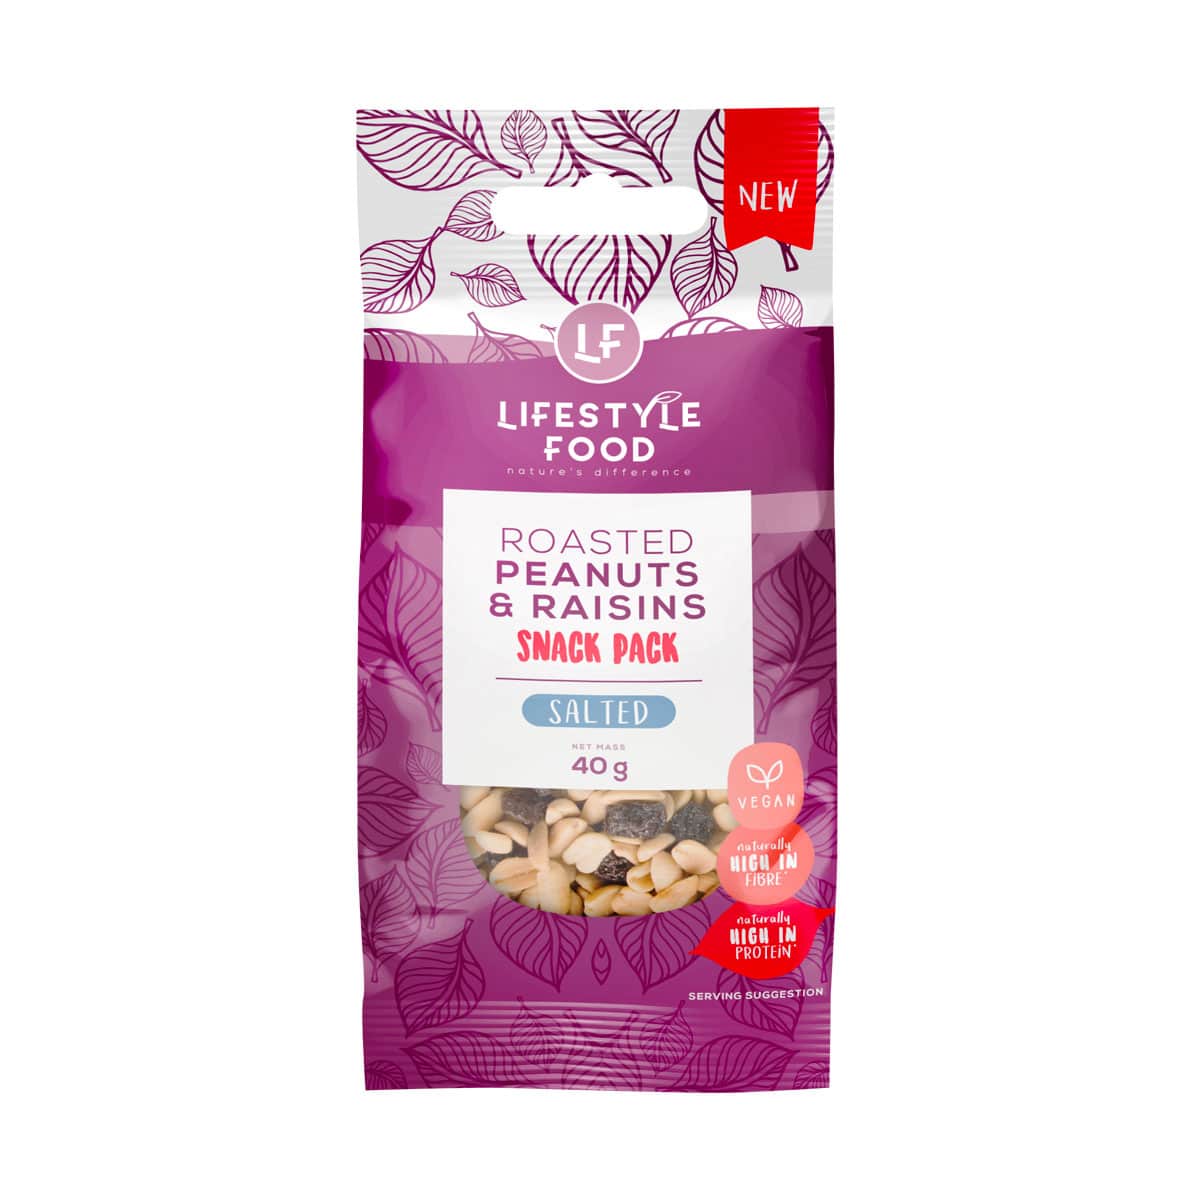 Lifestyle Food Roasted Peanuts & Raisins Snack Pack Salted - 40g